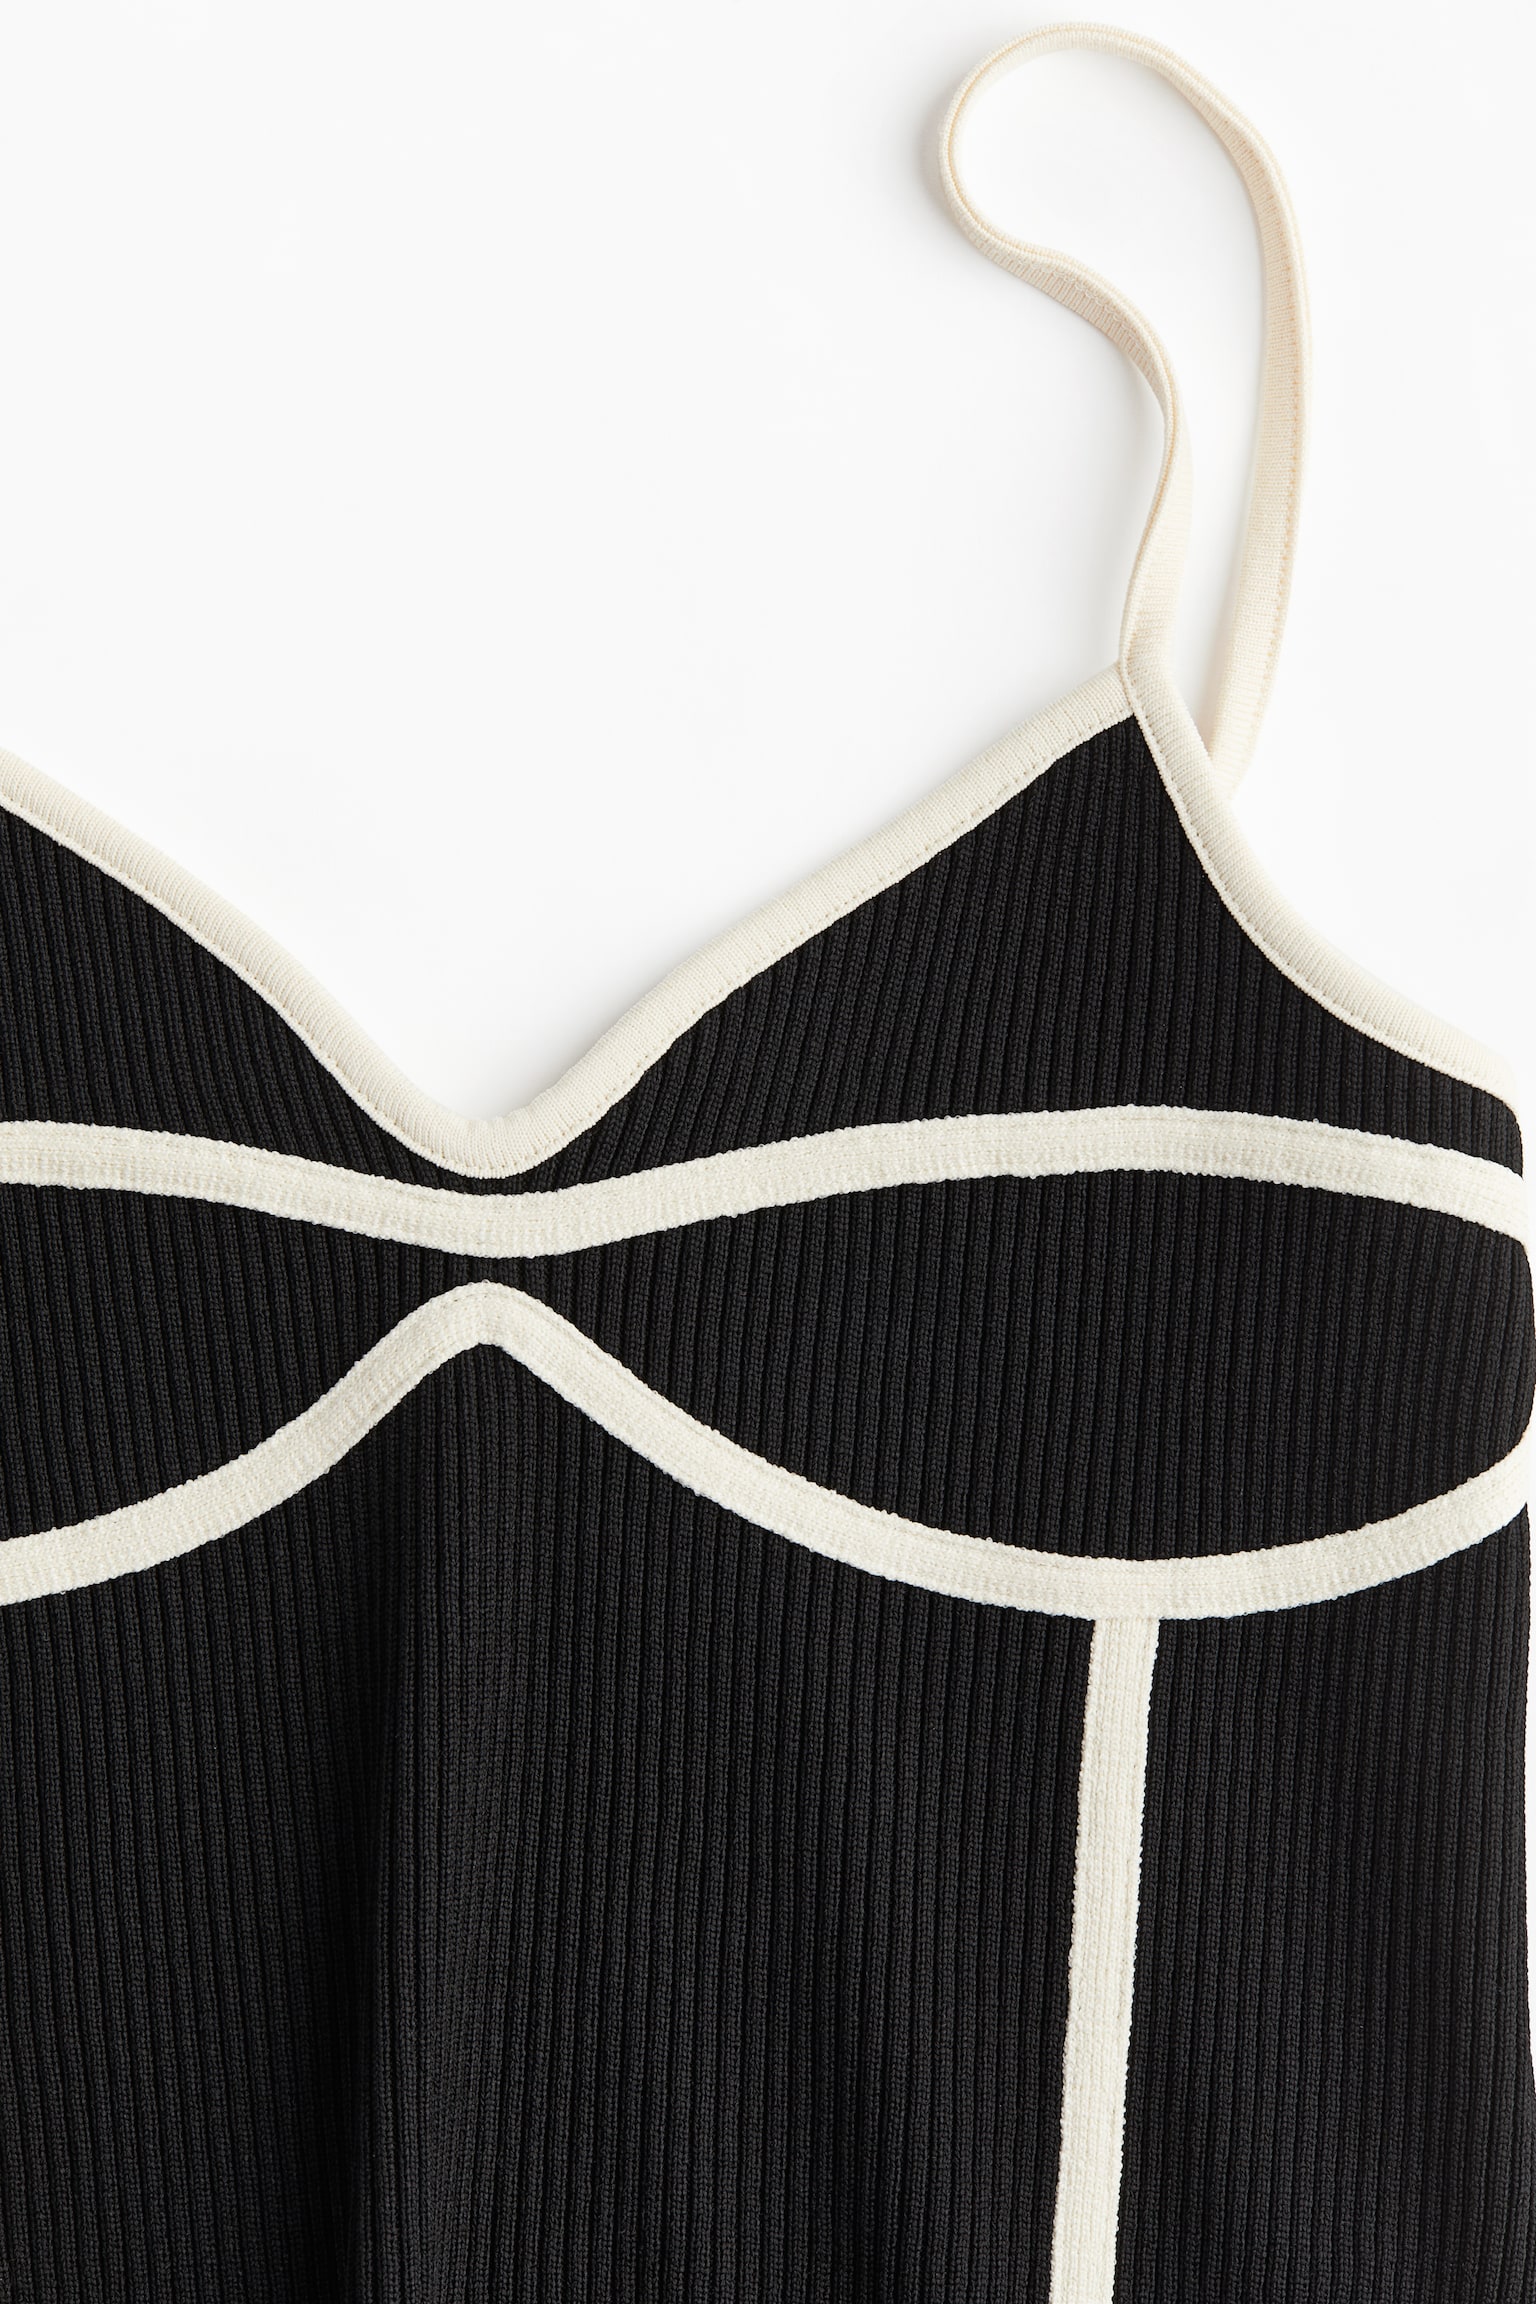 Top façon corset à bretelles fines - Noir/crème - 5